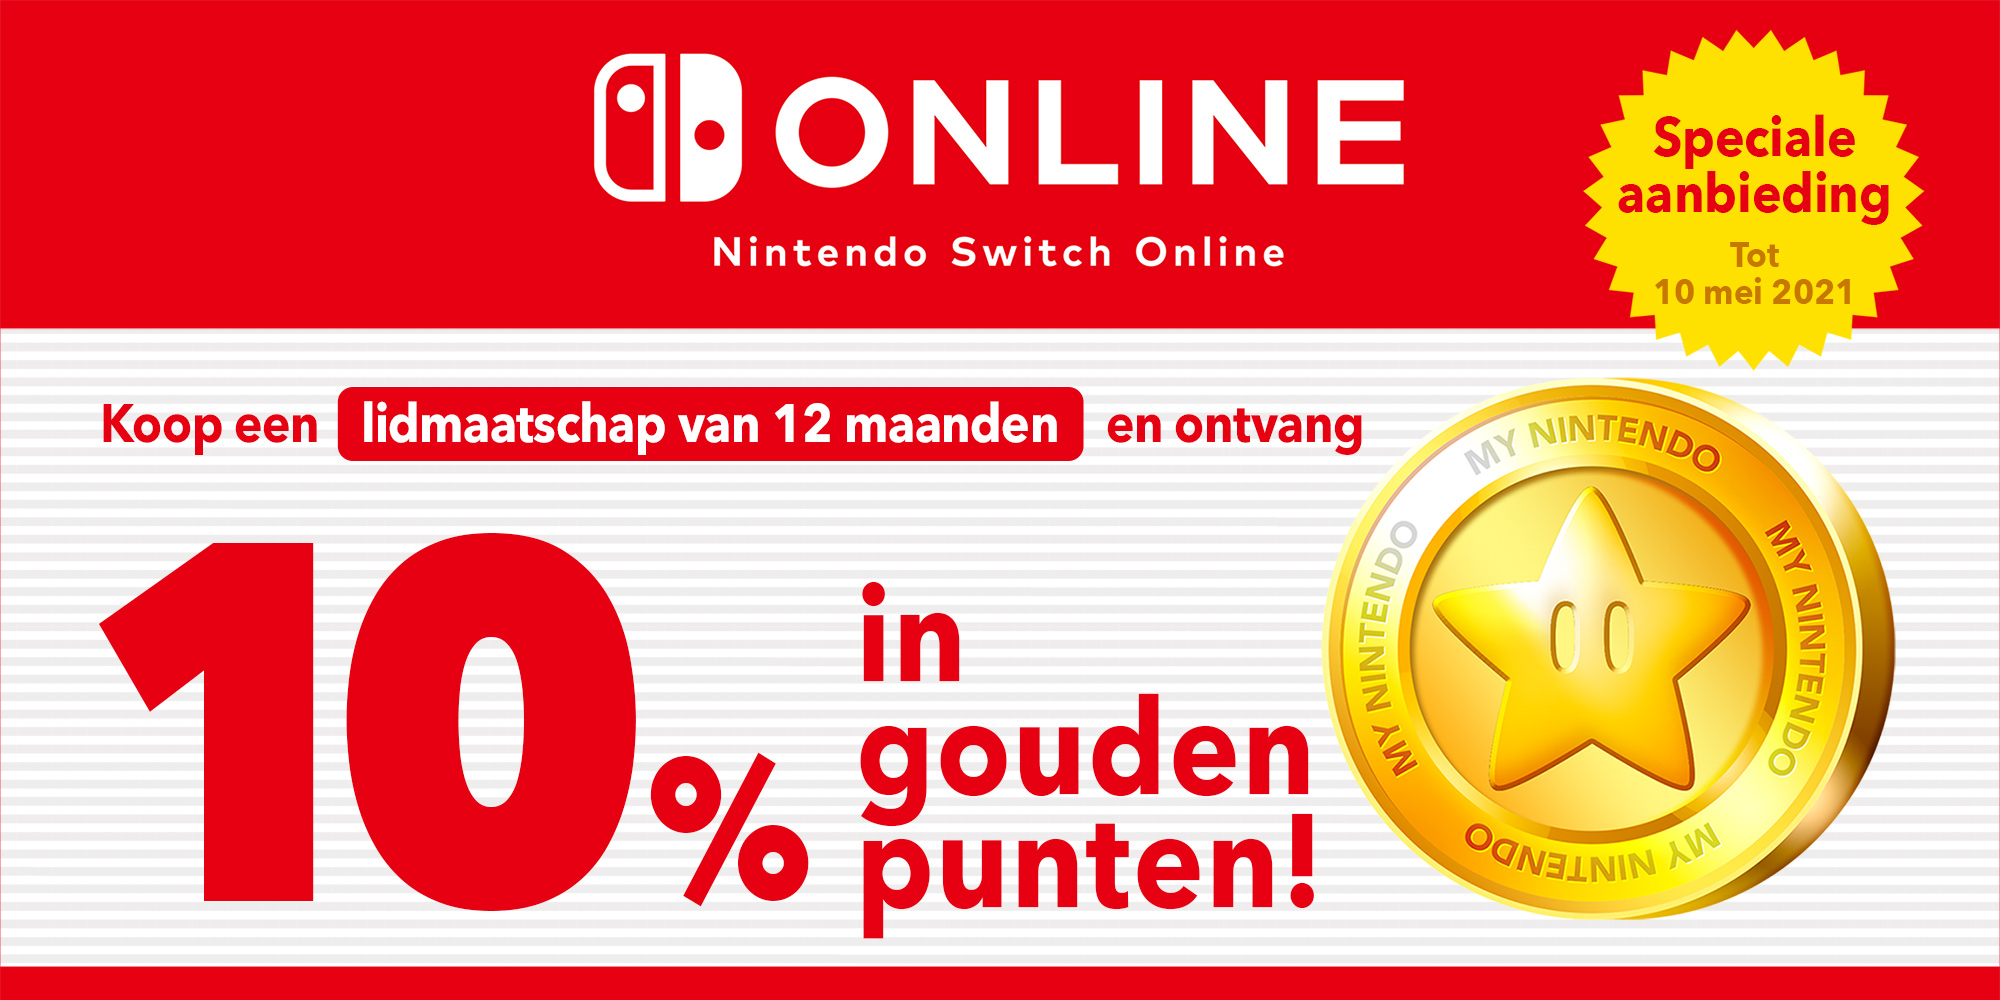 Speciale aanbieding: ontvang tot € 3,50 in gouden punten met een Nintendo Switch Online-lidmaatschap van 12 maanden!